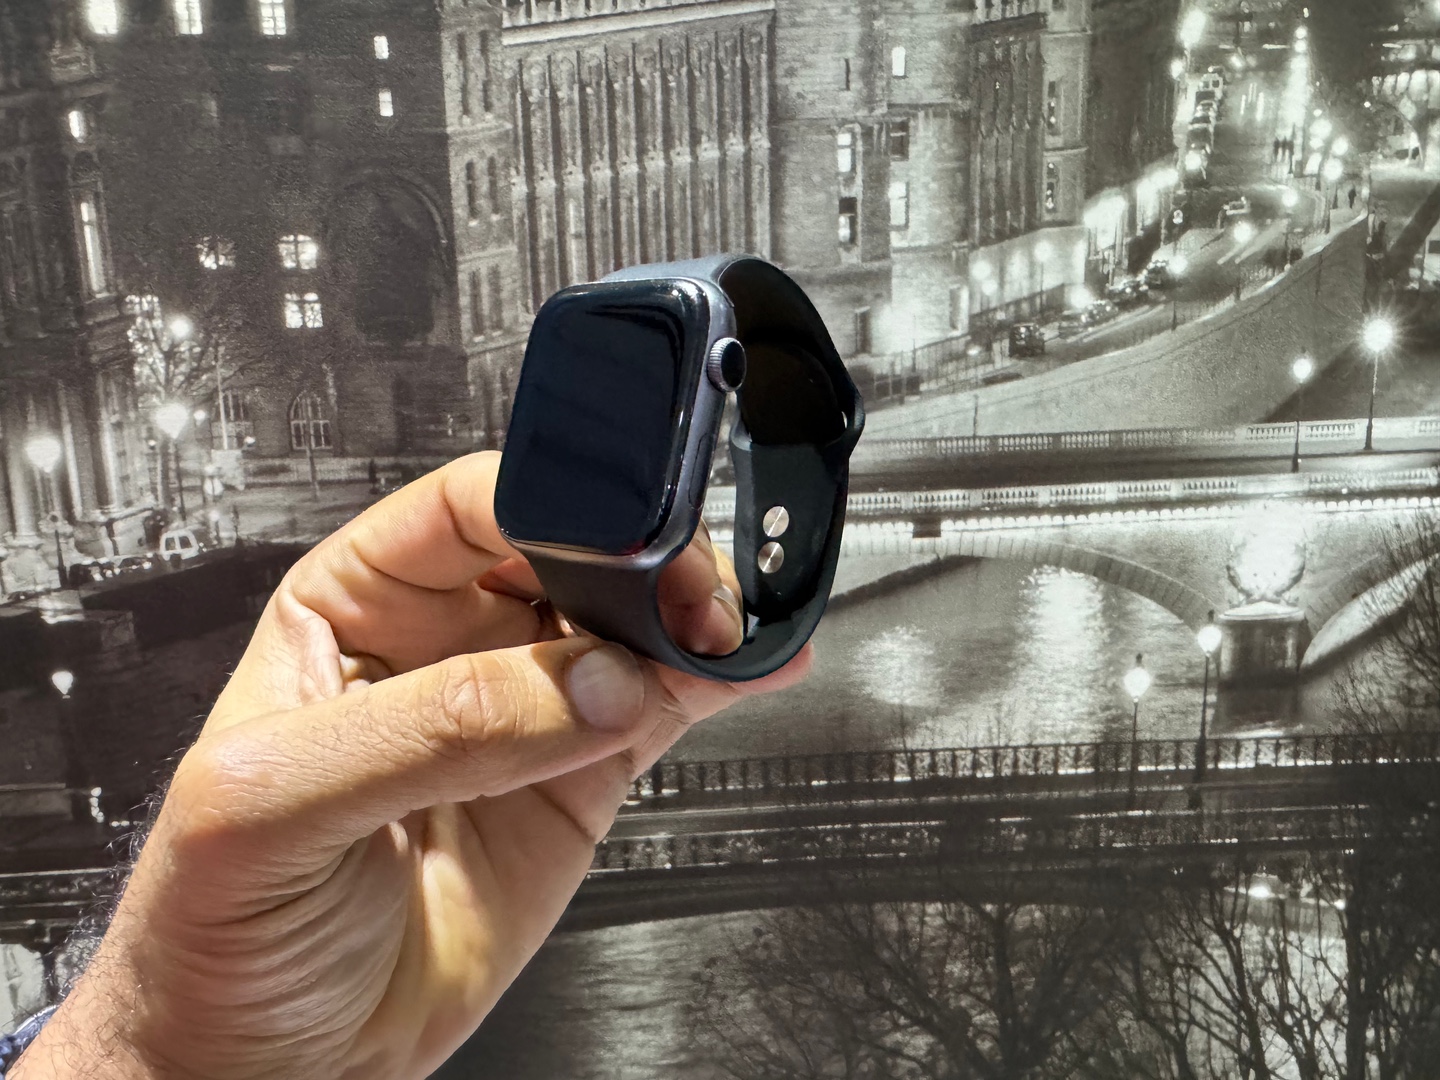 accesorios para electronica - Apple Watch Series 4 44mm GPS Space Gray Usado GarantÍa, RD$ 11,500 NEG 0